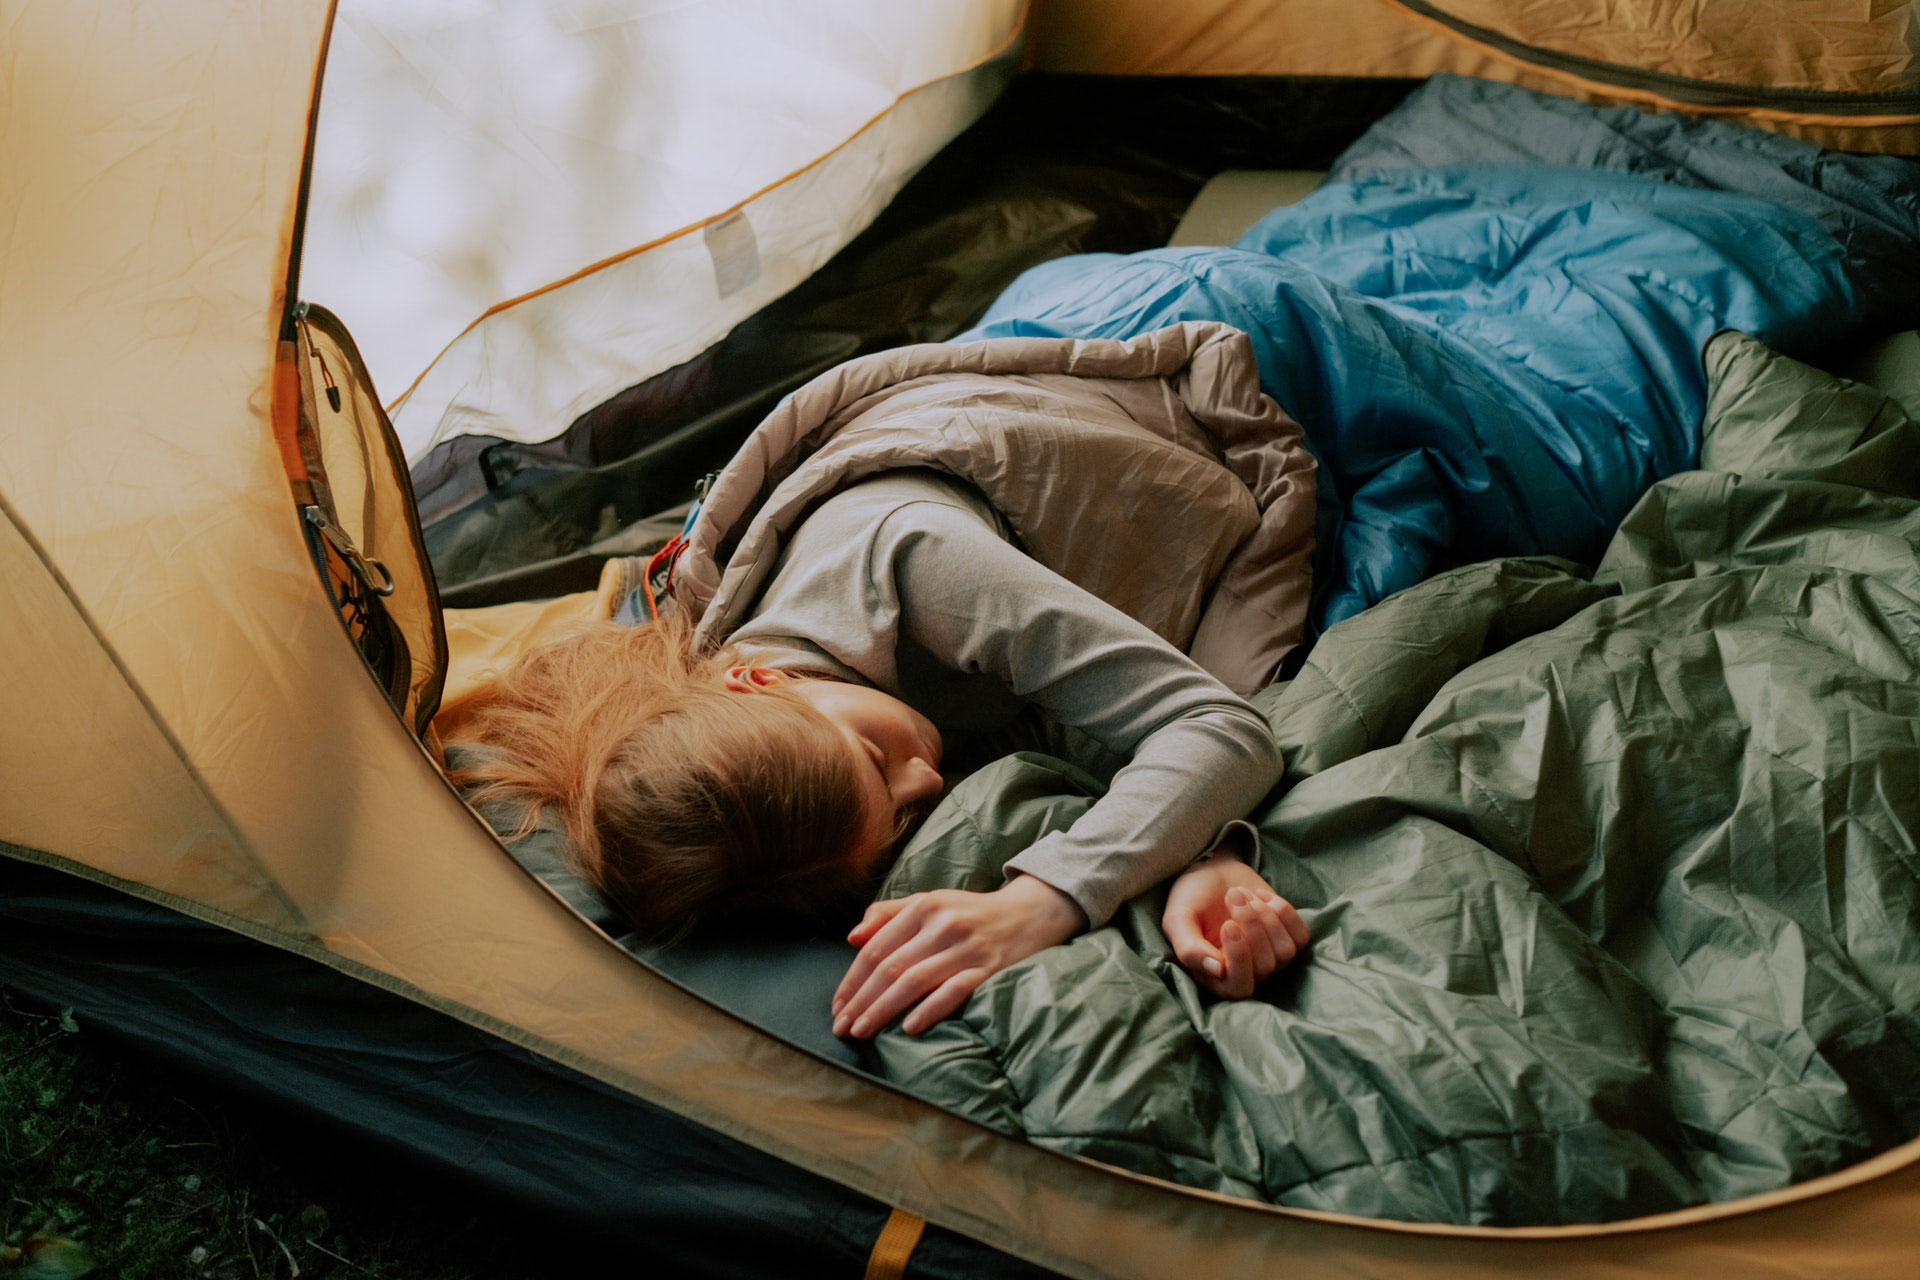 Quoi apporter en camping : Liste des essentiels pour le camping